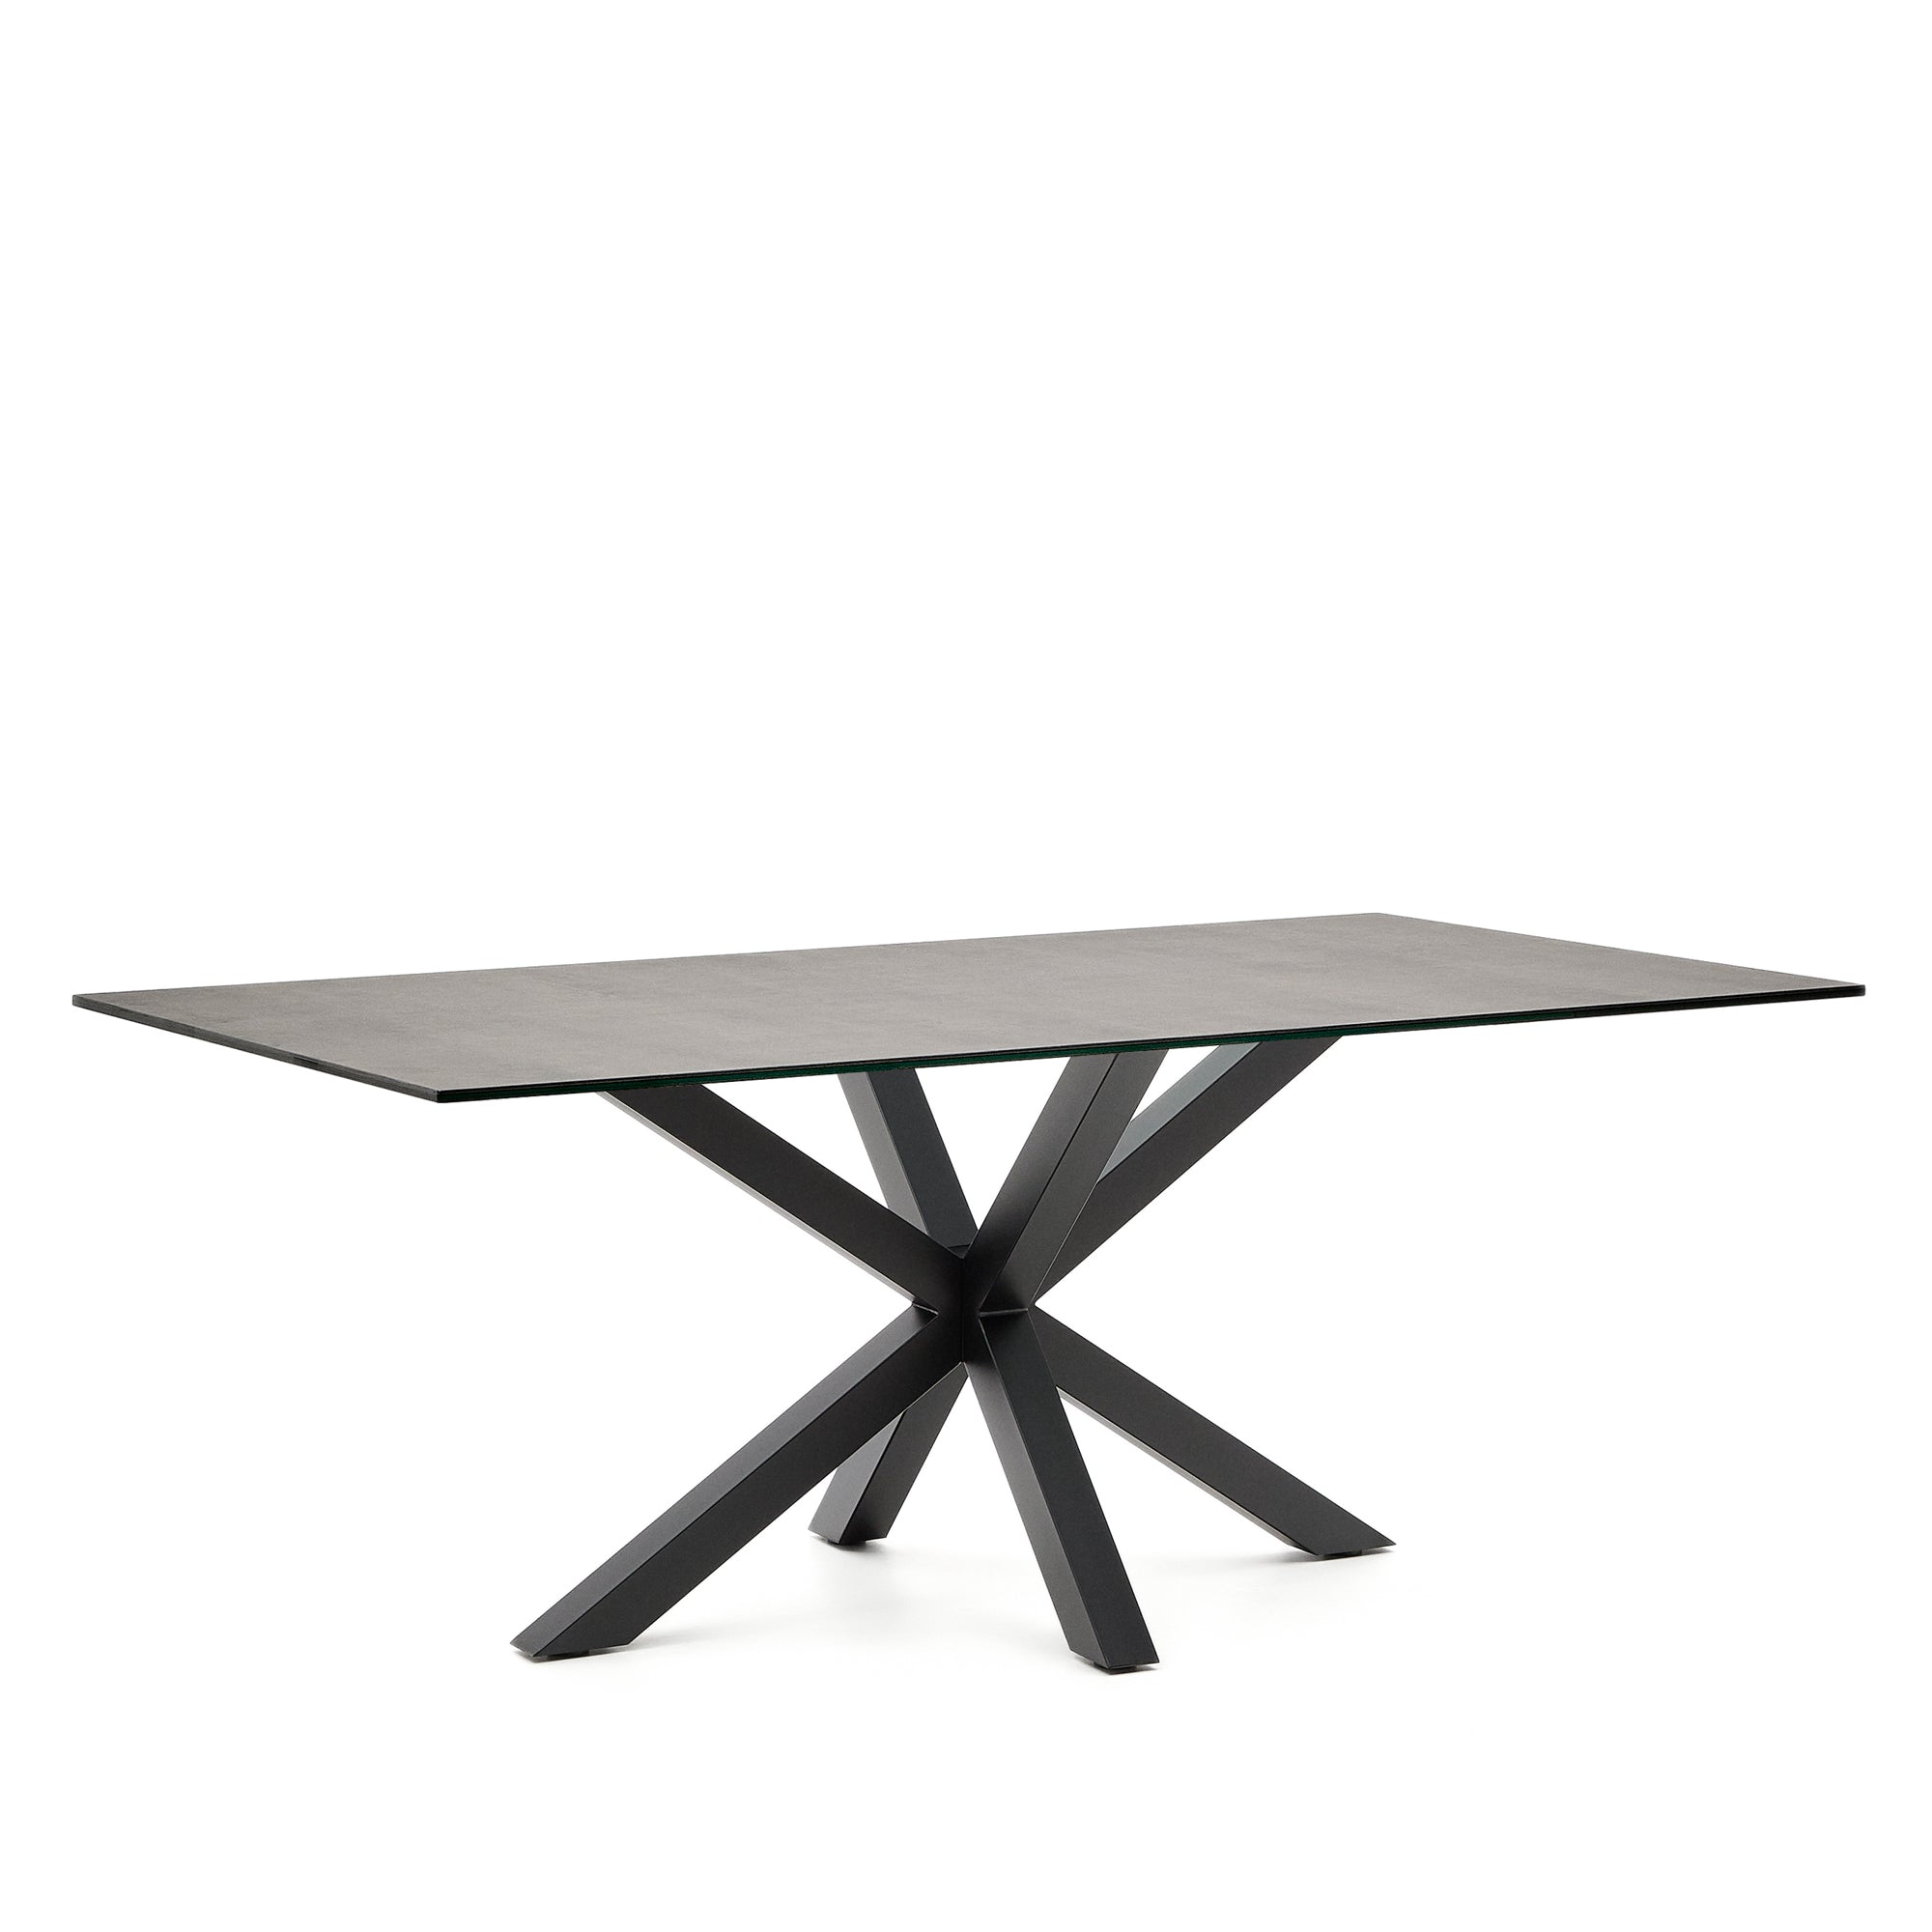 Argo asztal Vas Moha porcelánból és acél lábakkal fekete befejezéssel, 200 x 100 cm